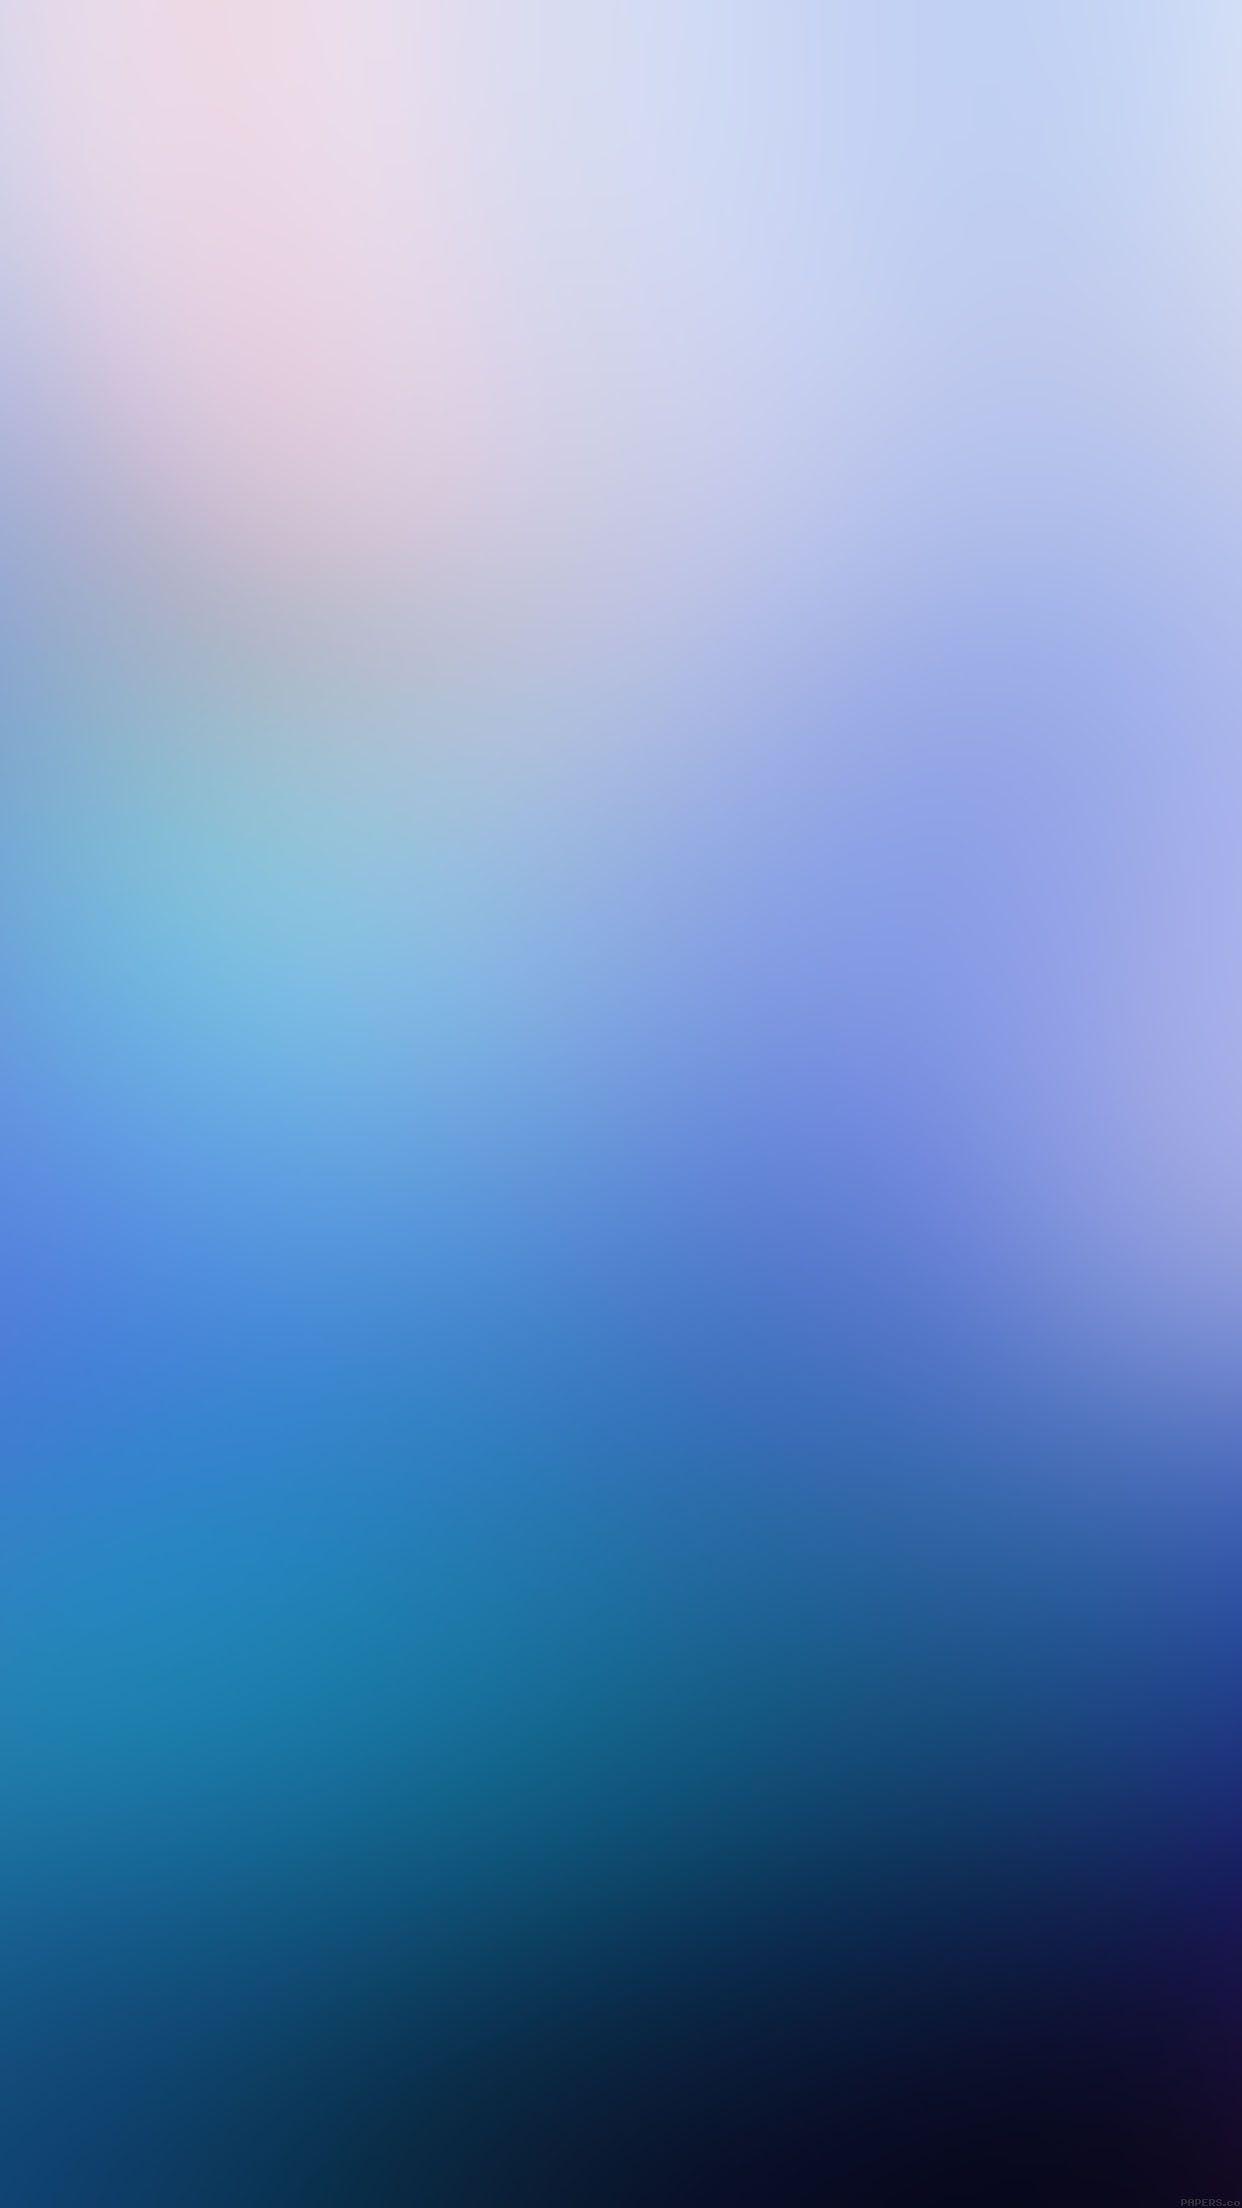 Blue Blur Wallpapers - Top Free Blue Blur Backgrounds - WallpaperAccess